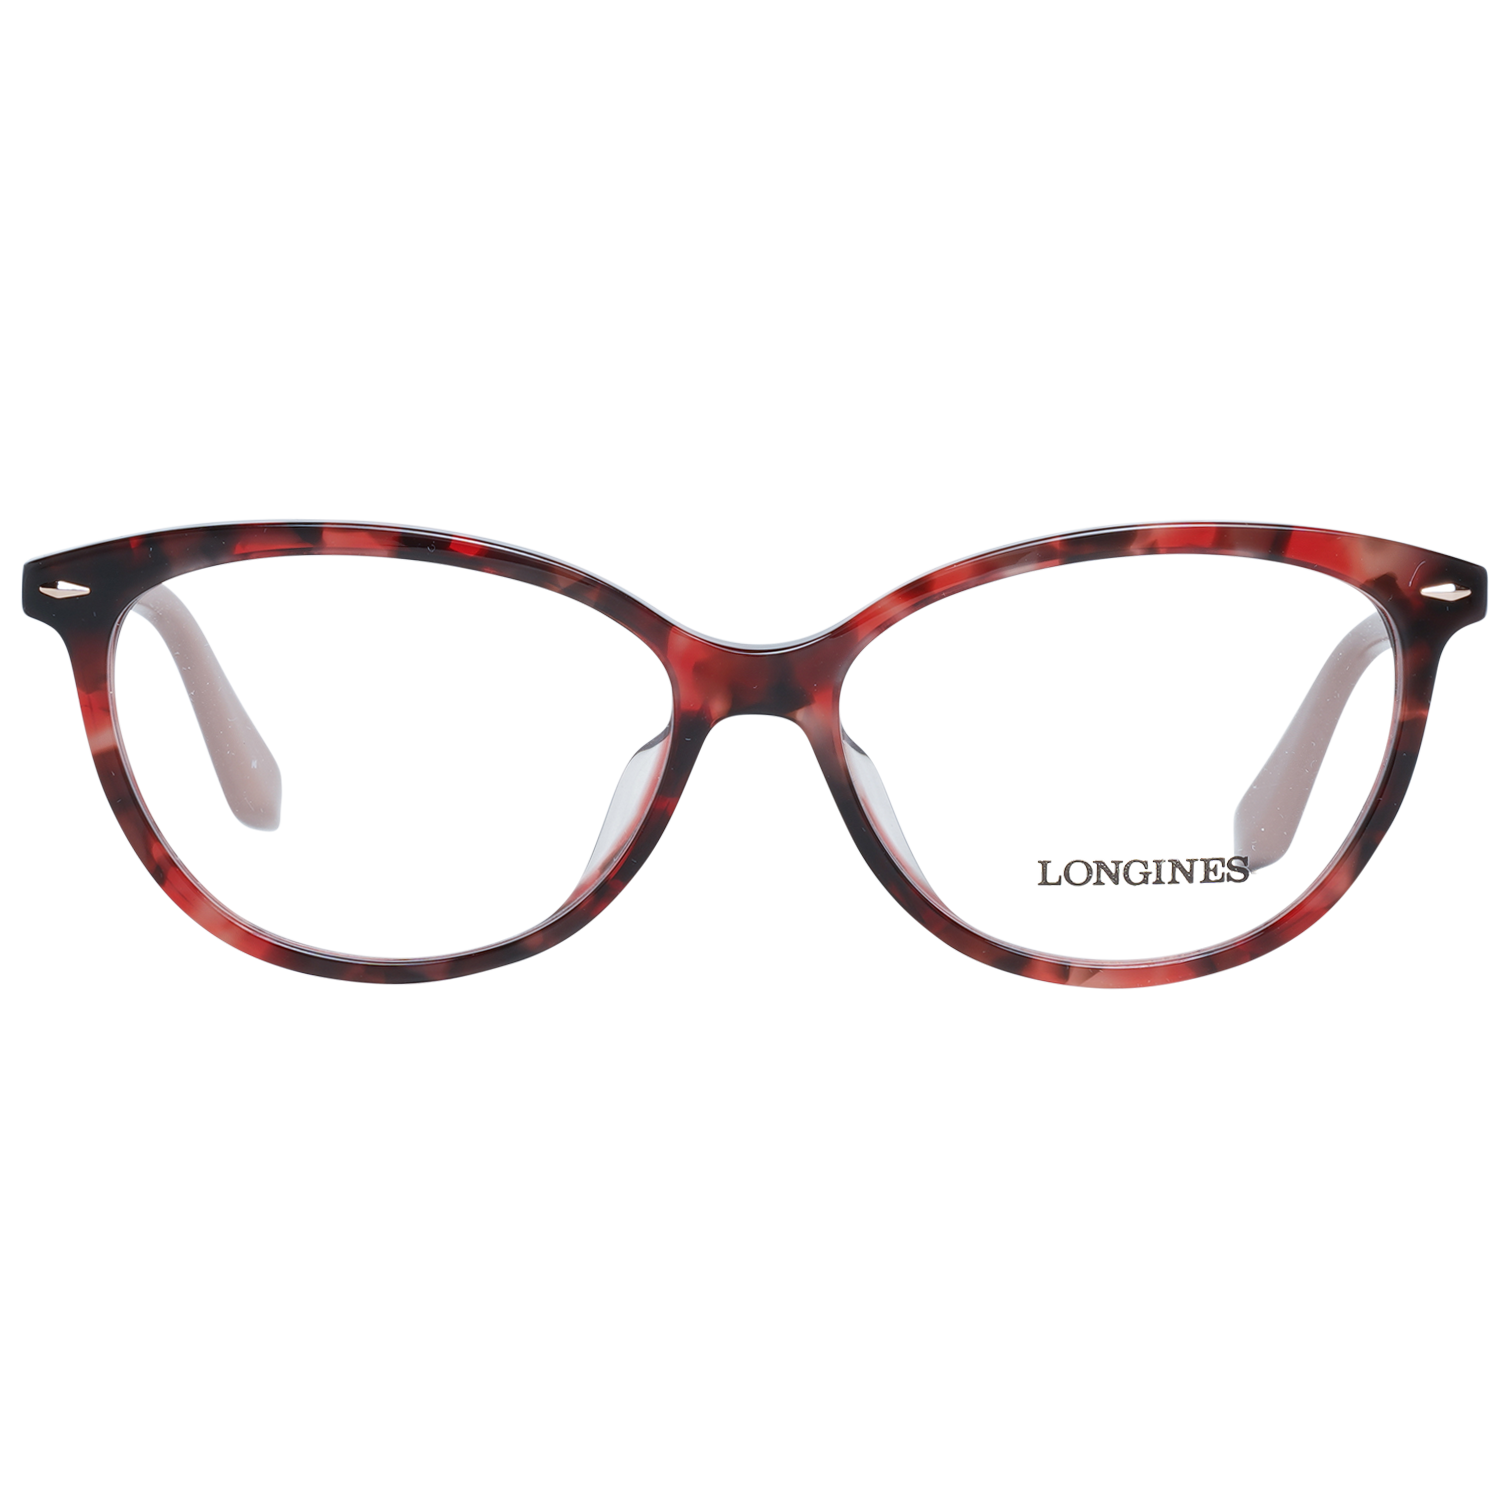 Longines Frames Longines Optical Frame LG5013-H 054 54 Eyeglasses Eyewear UK USA Australia 